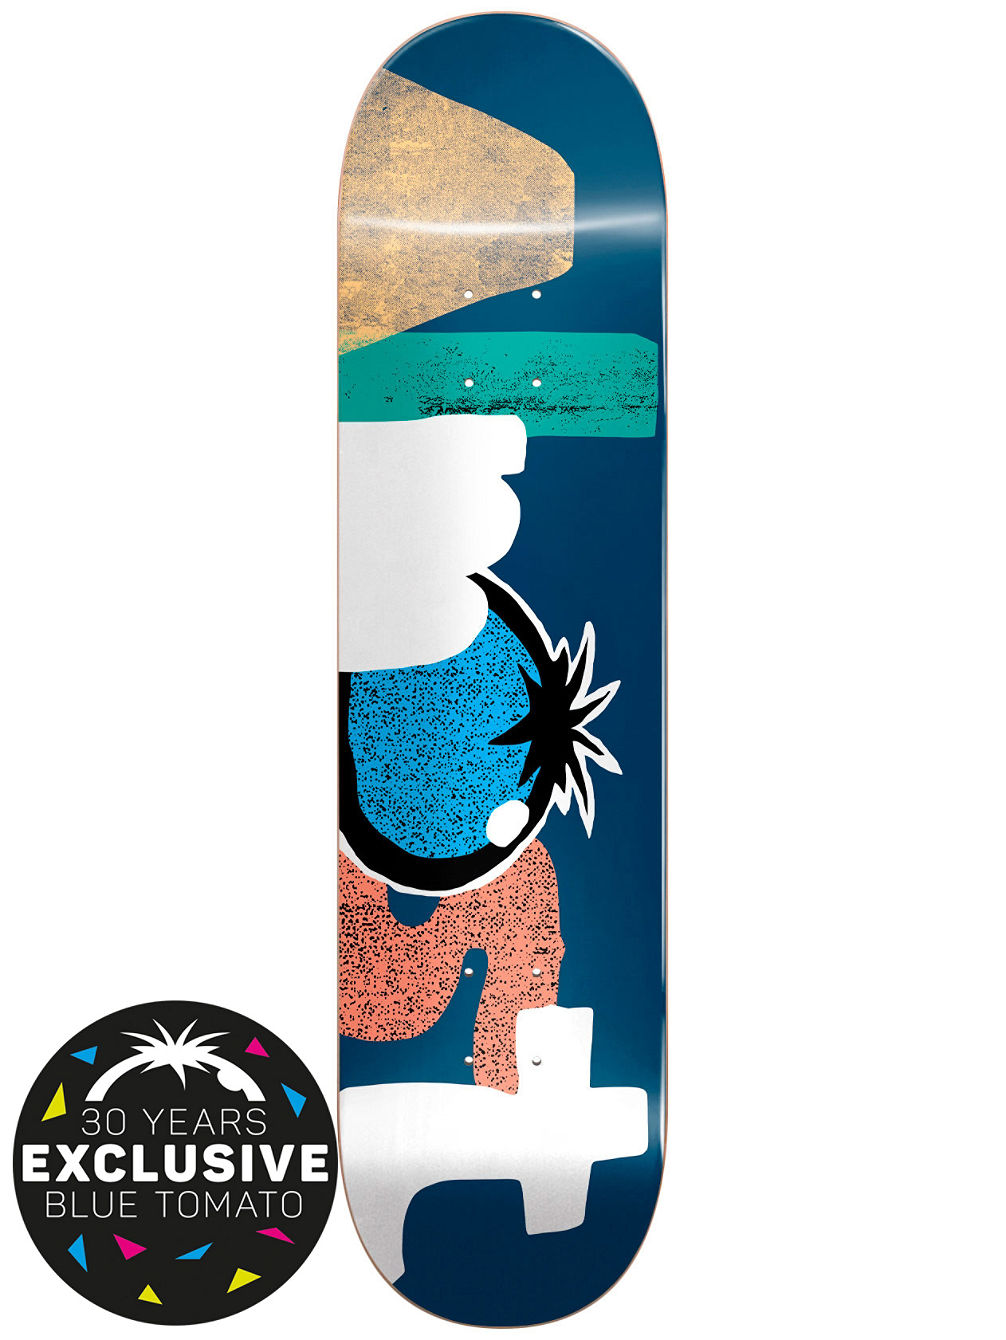 X BT Organics 8.0&amp;#034; Skateboard Deck